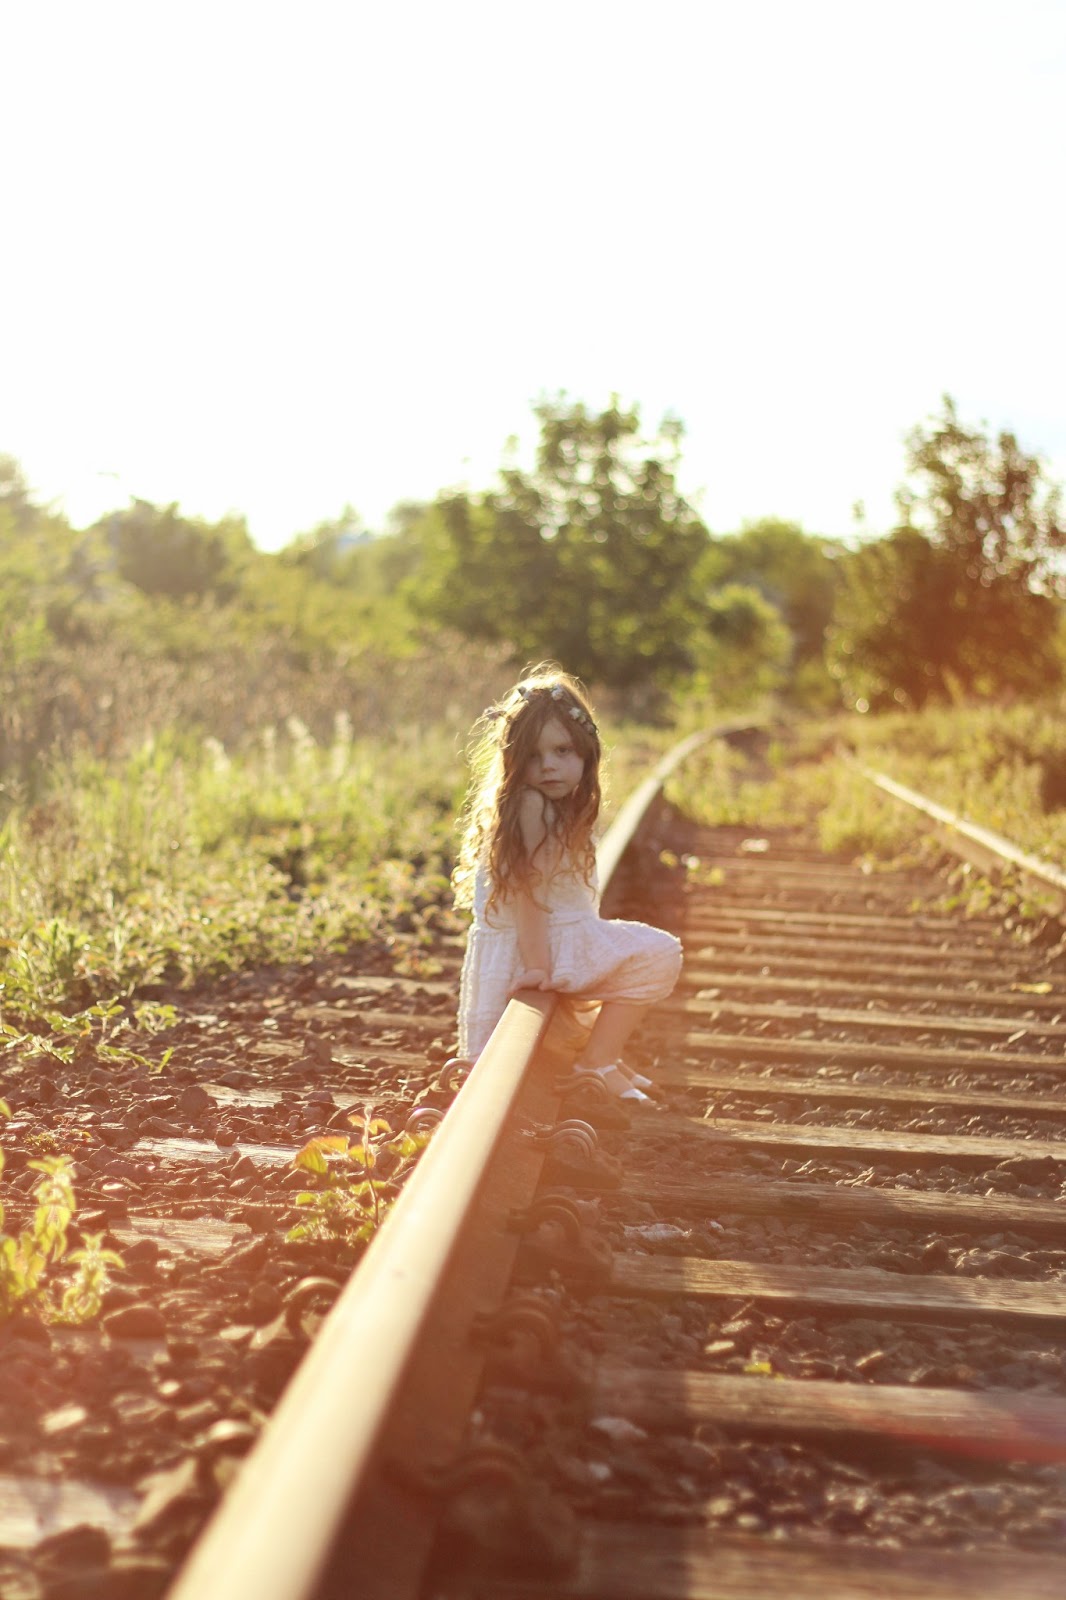 On the train track | Gingerlillytea